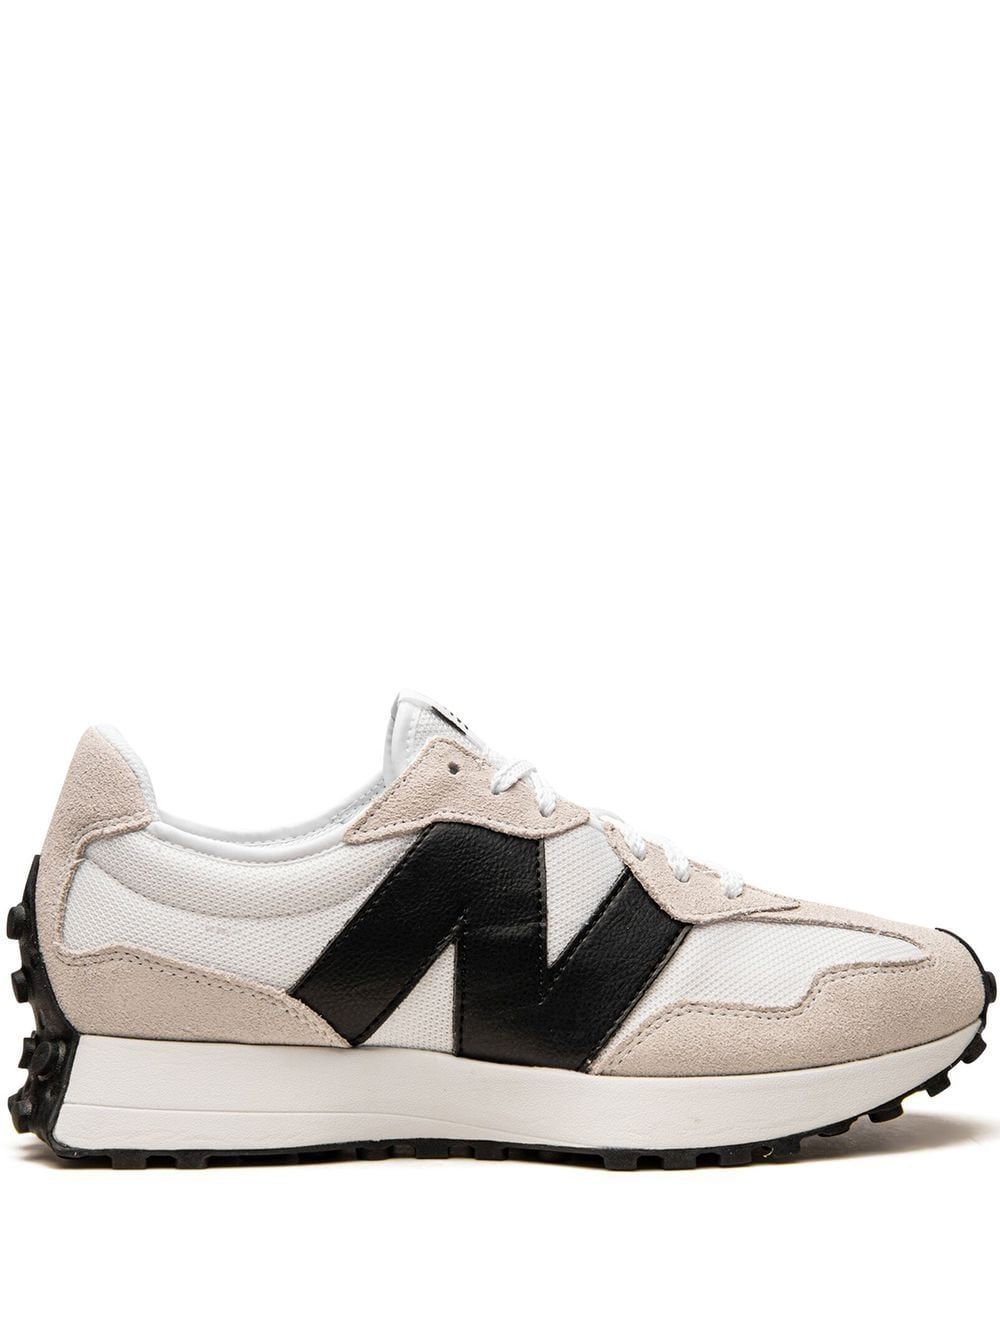 New Balance 327 "White/Black" Sneakers - Farfetch | Farfetch Global